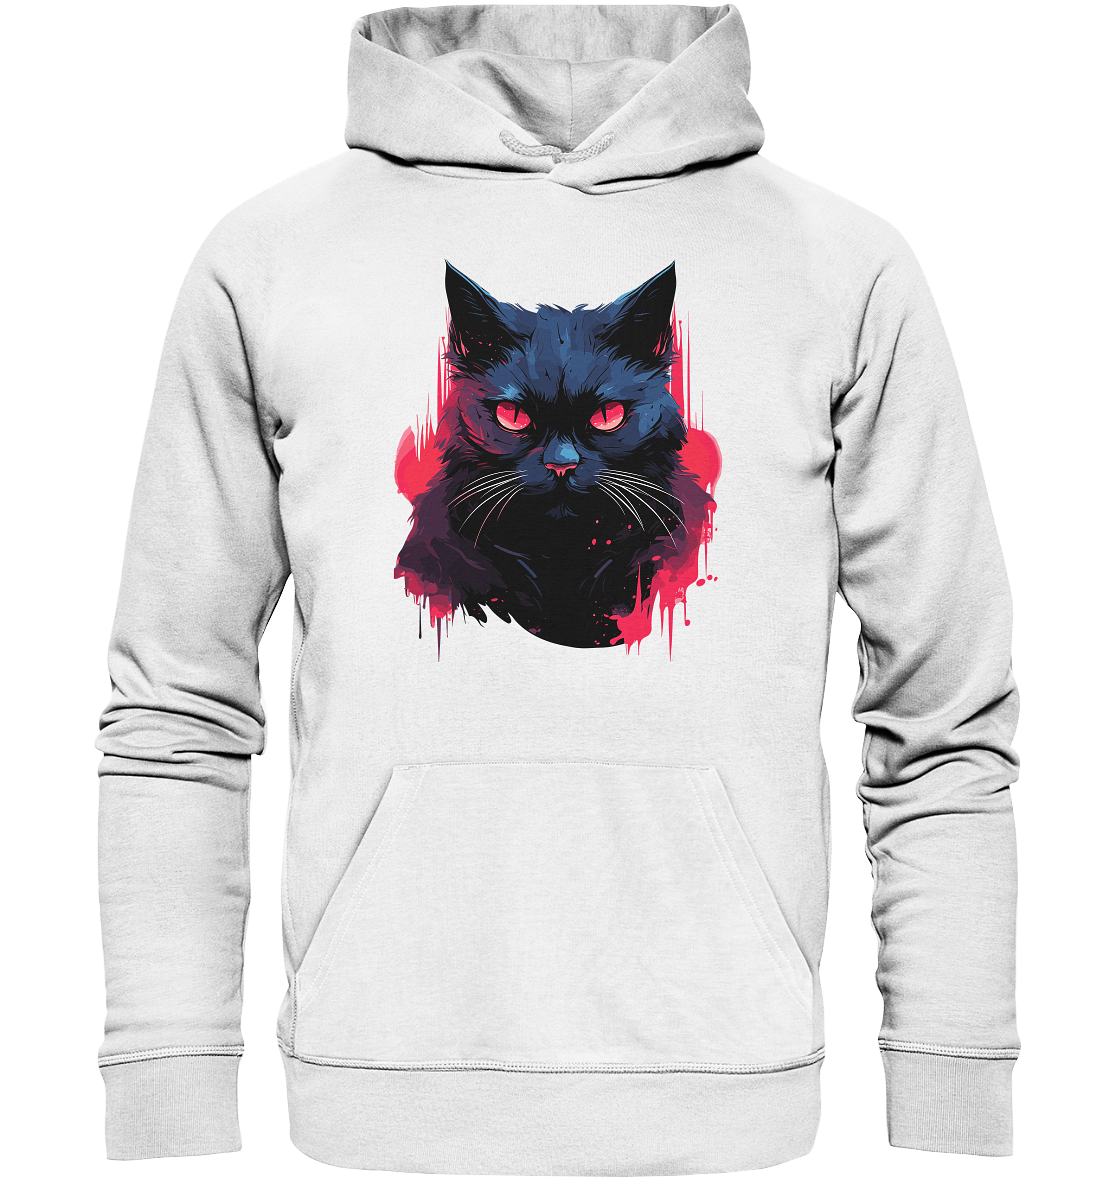 Unisex Bio-Hoodie mit Katzenmotiv "Dark Cat" - Mindprints Design